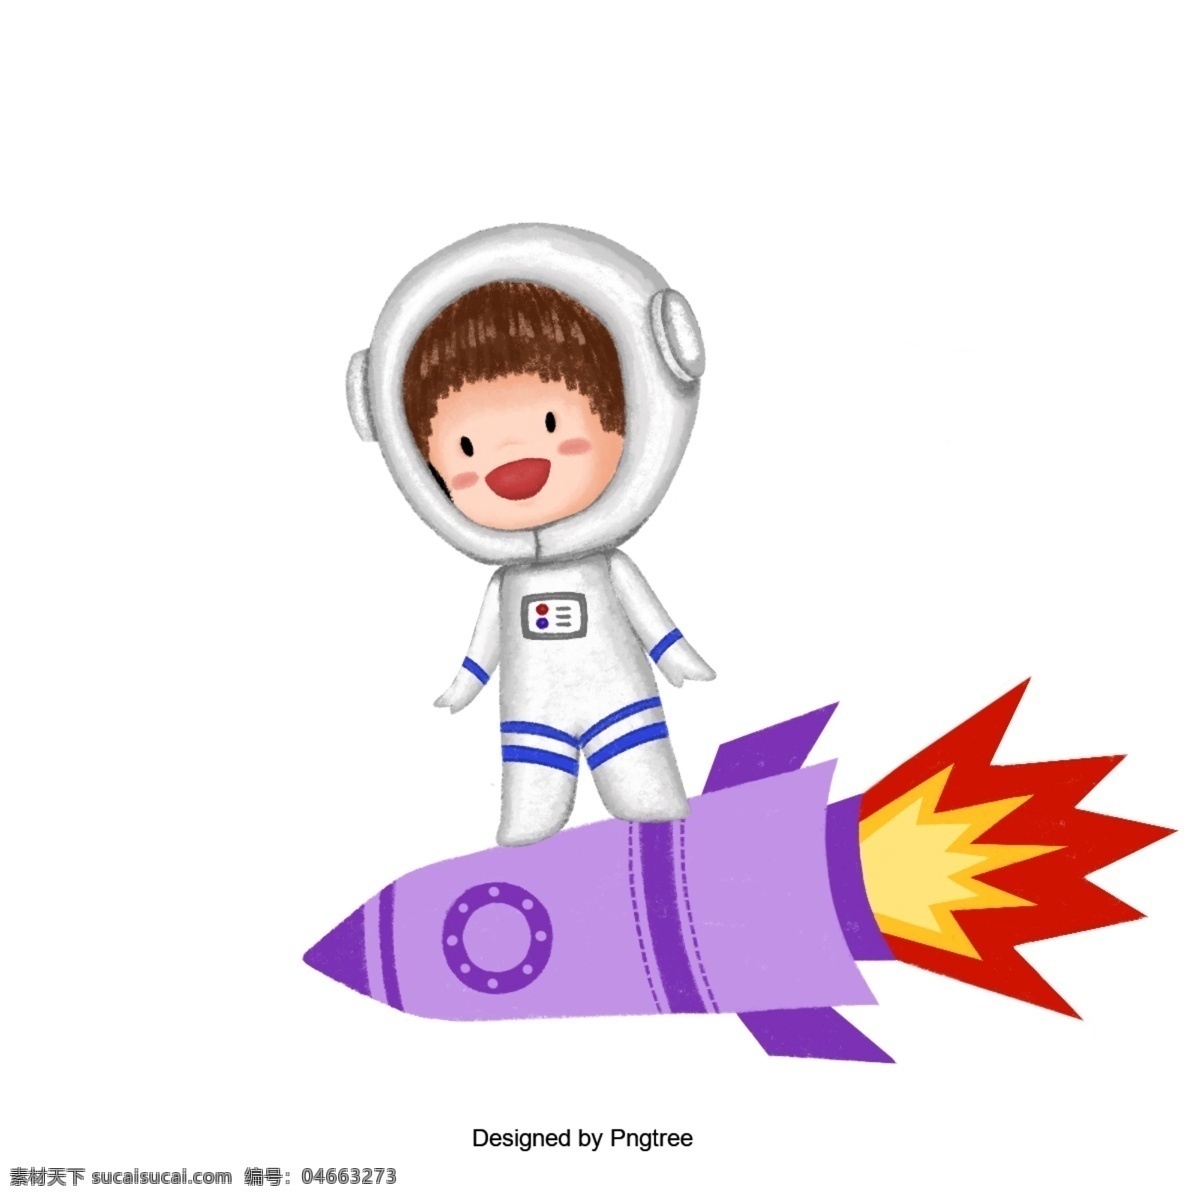 宇航员 火箭 手 油漆 空间 宇宙 白色 紫色 红色 金色 可爱 卡通 卡 邮政